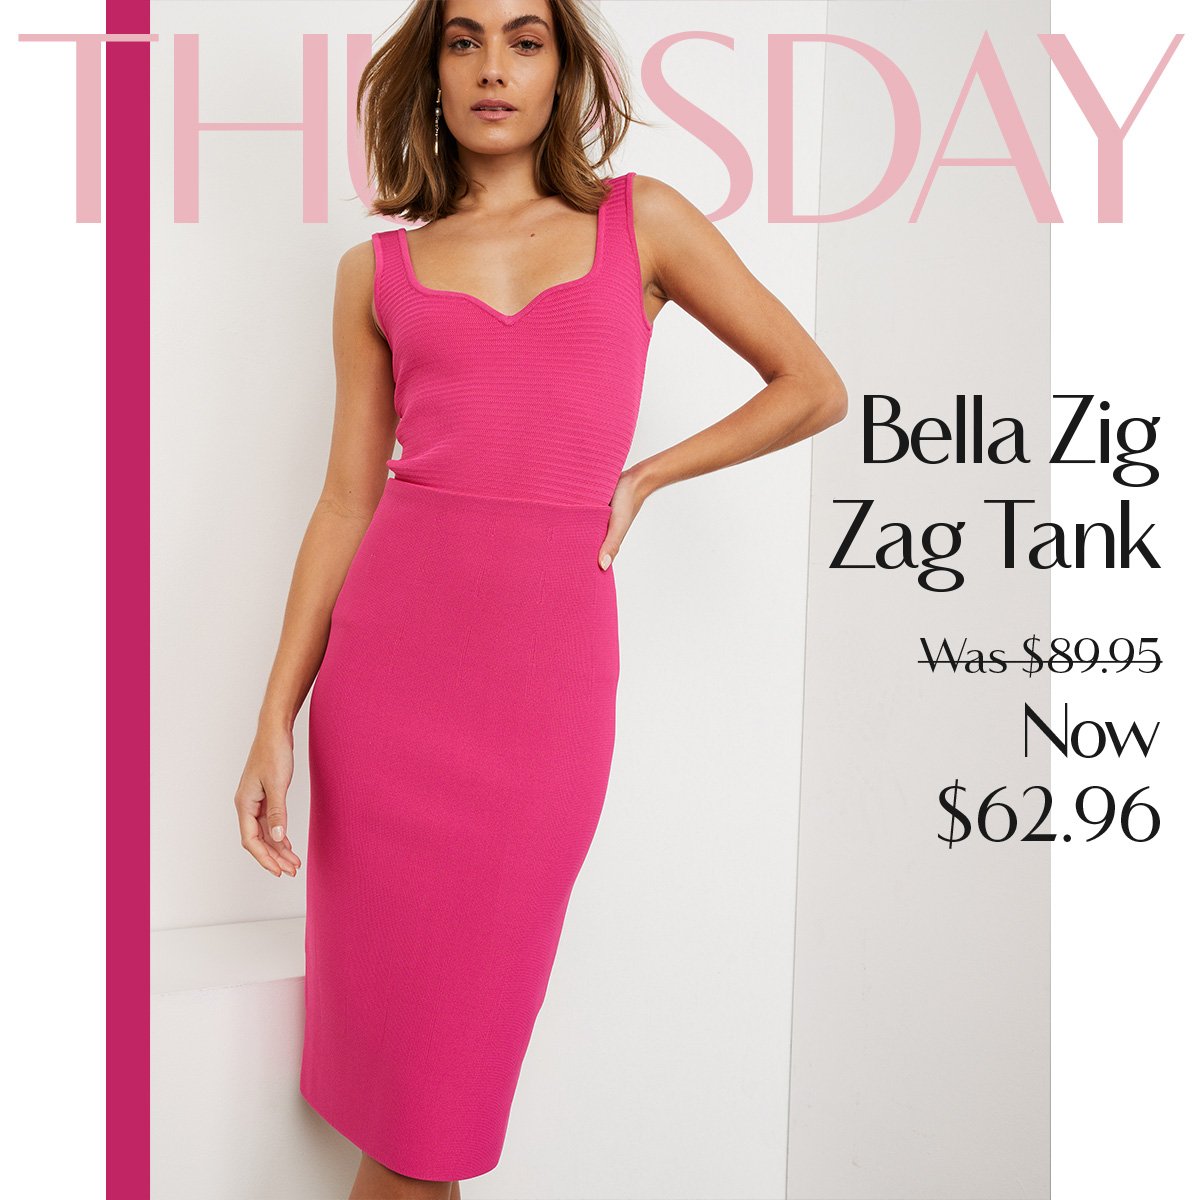 Thursday - Bella Zig Zag Tank